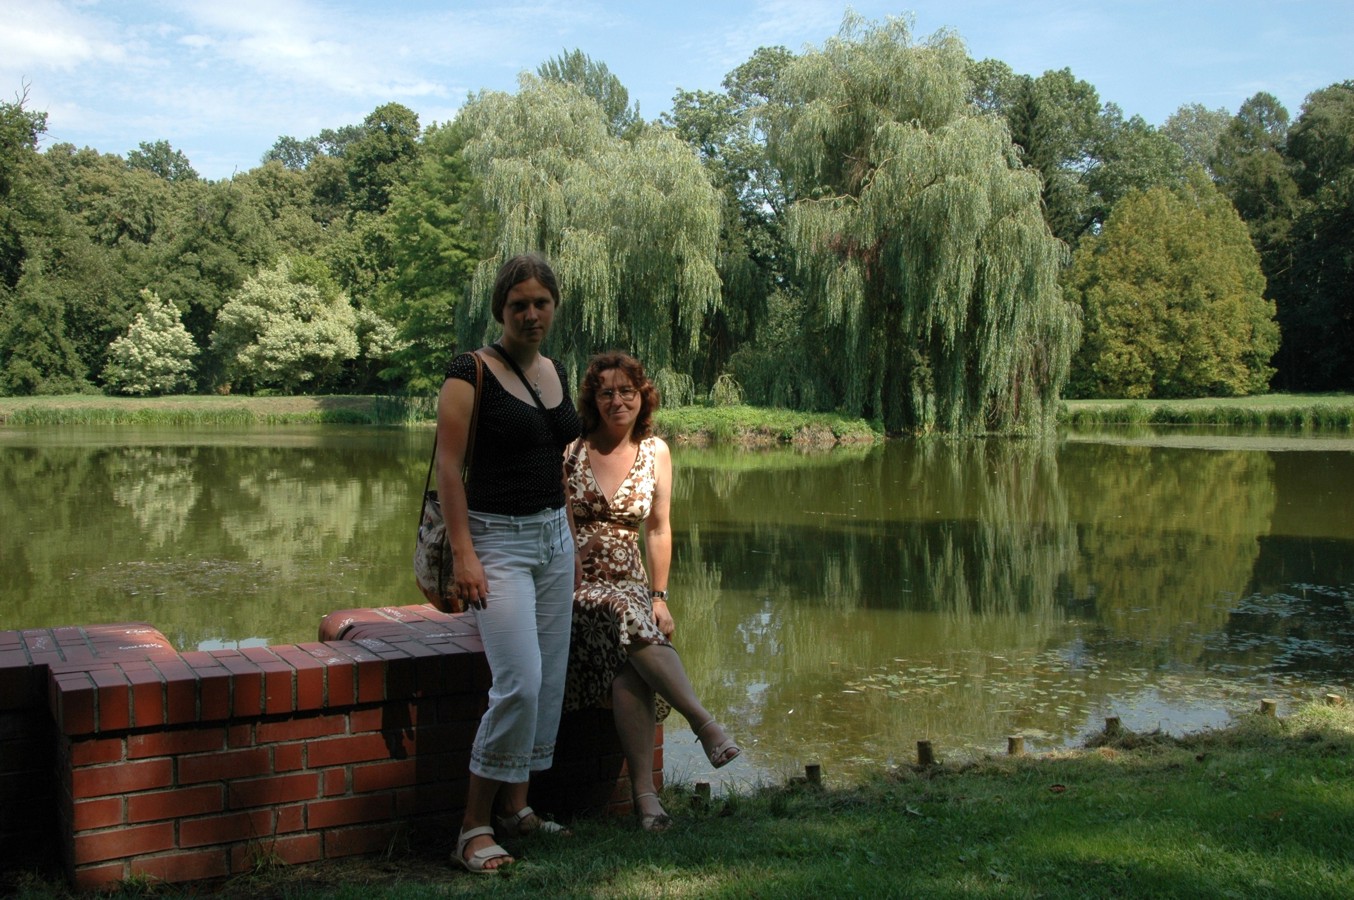 Arboretum Kórnickie - Asia i ja nad stawem